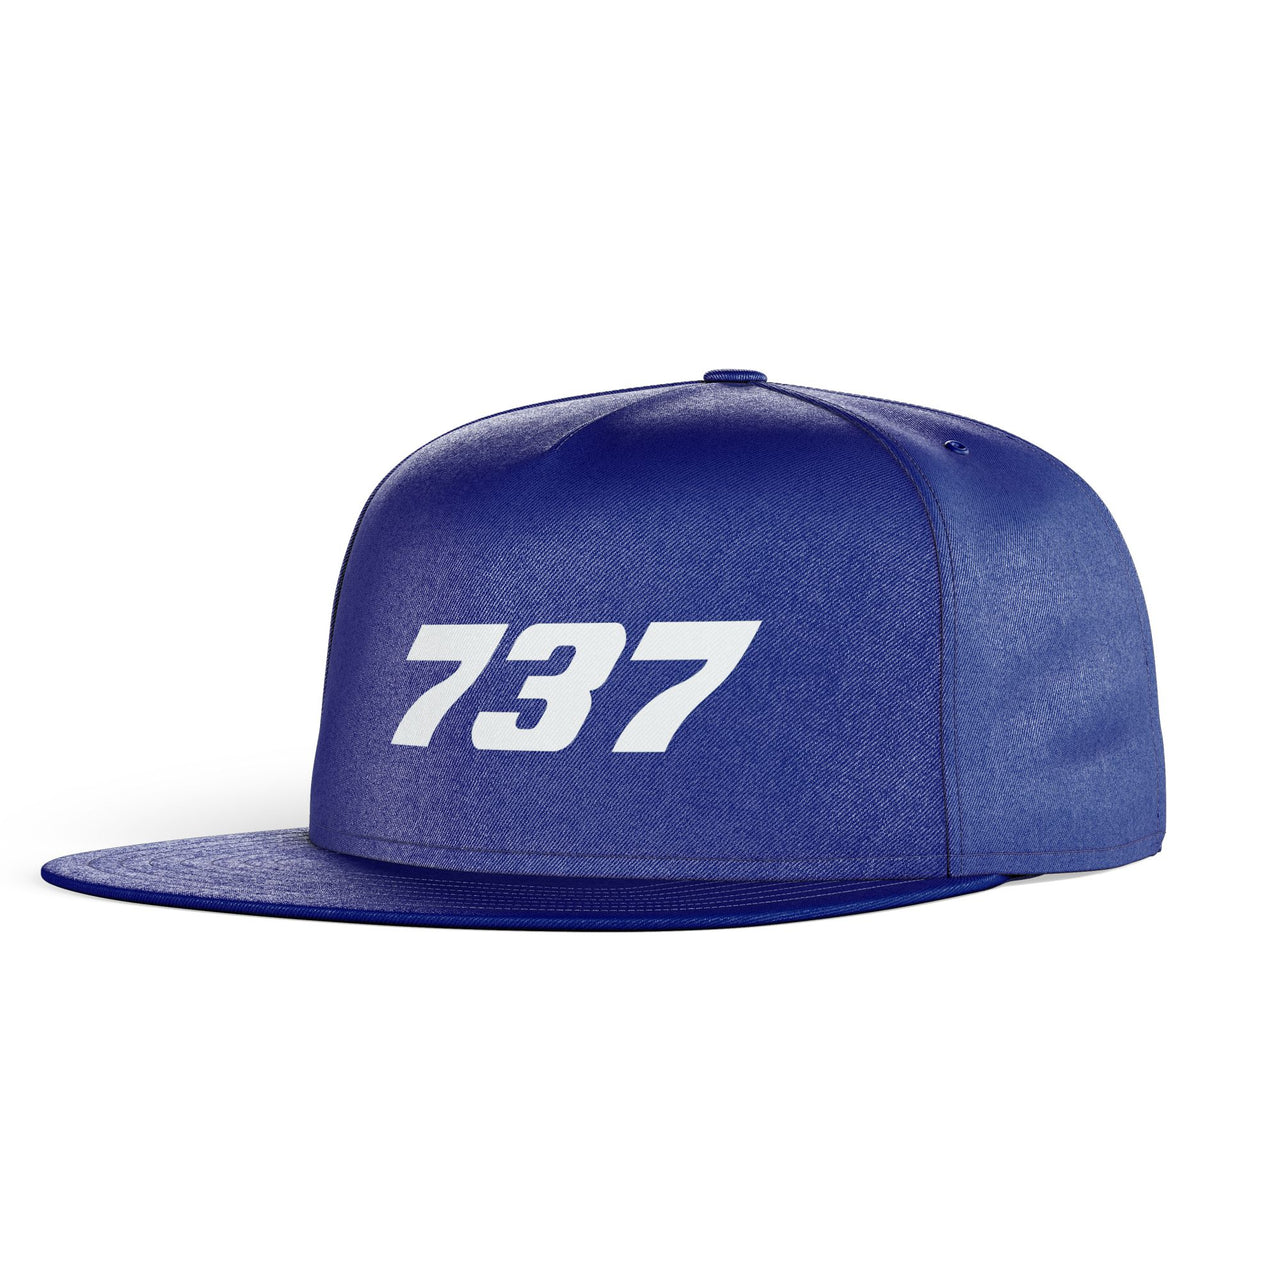 737 Flat Text Designed Snapback Caps & Hats